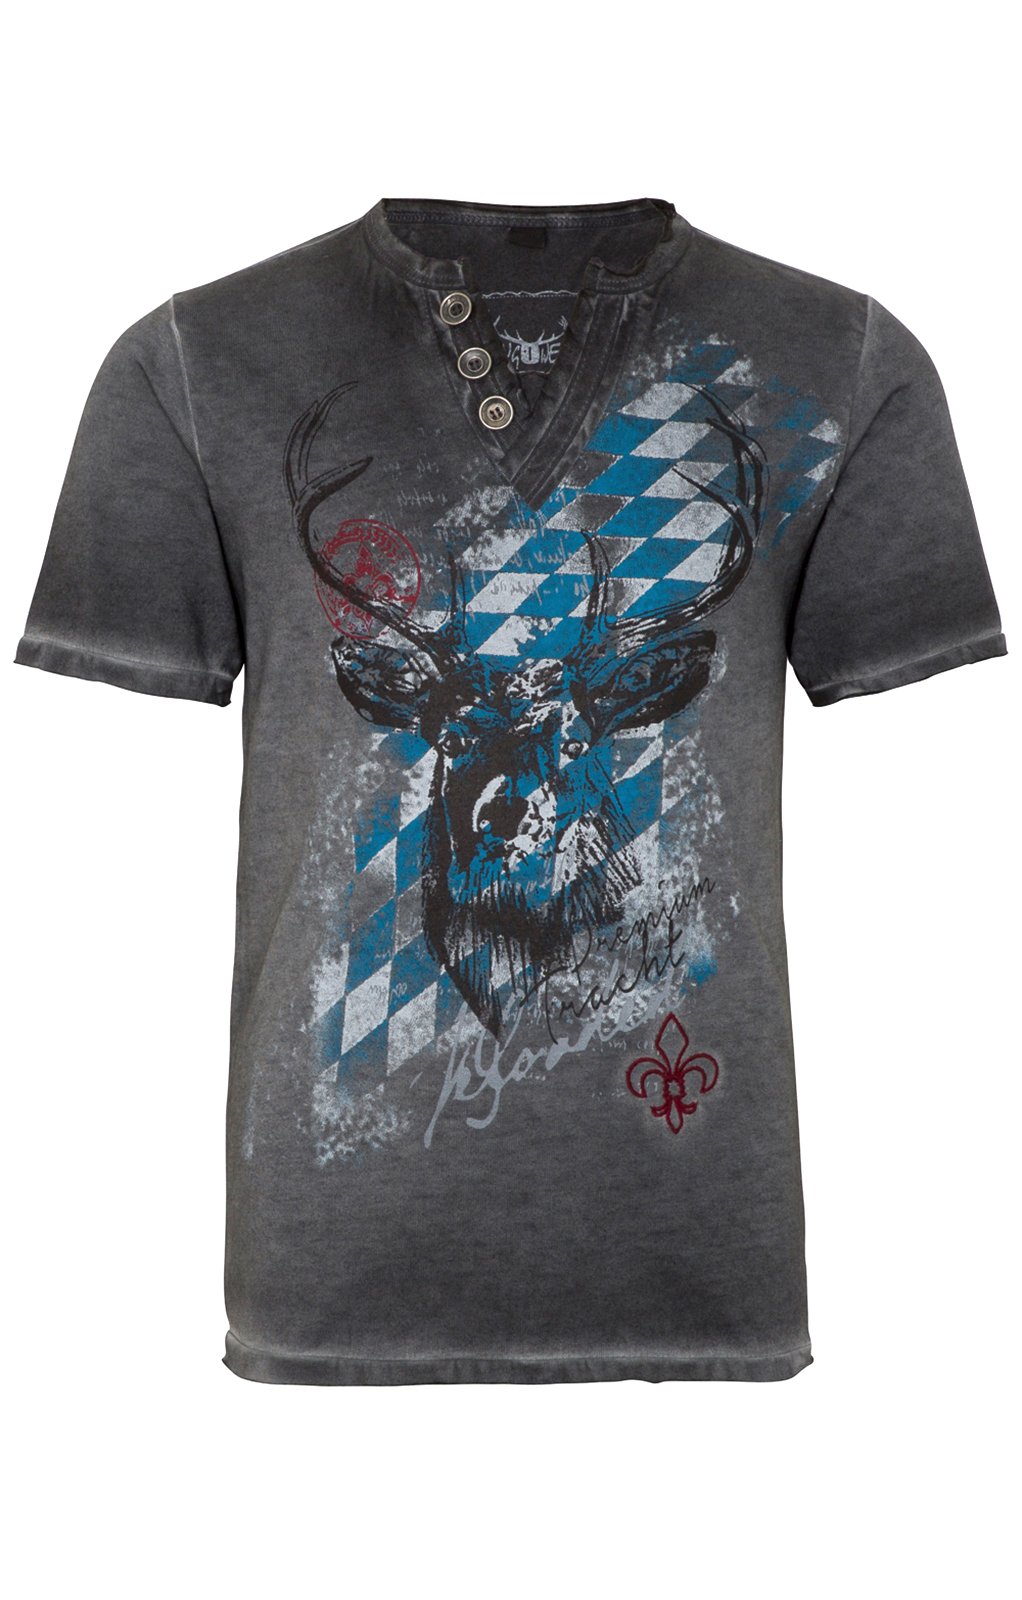 weitere Bilder von Trachten T-Shirt FERDI Bavaria grau